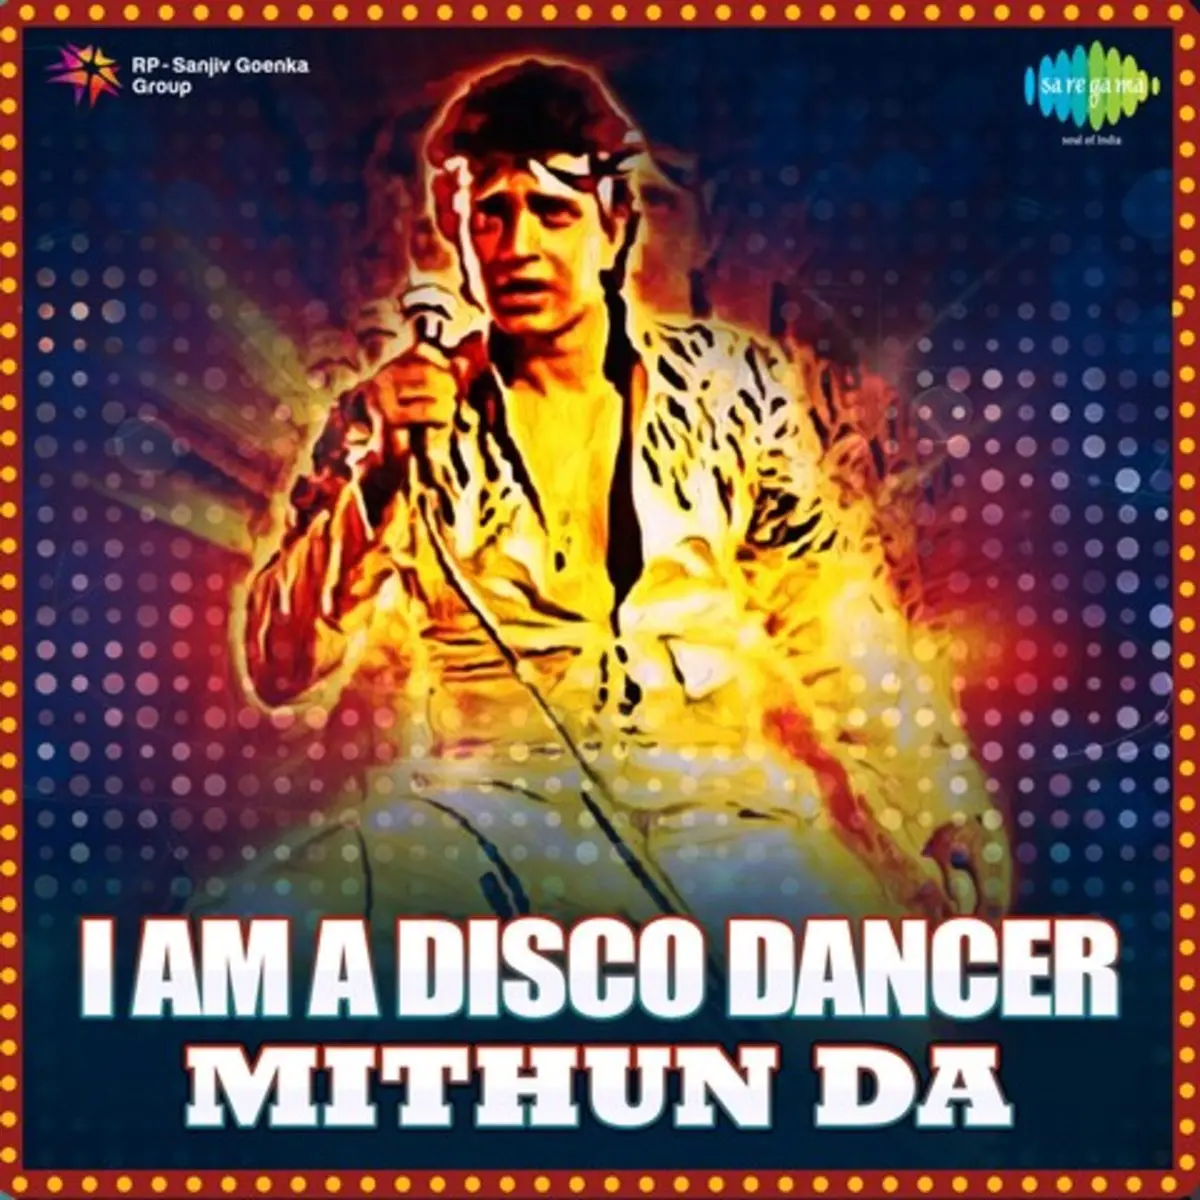 I Am A Disco Dancer Mithun Da Songs Download I Am A Disco Dancer Mithun Da Mp3 Songs Online Free On Gaana Com